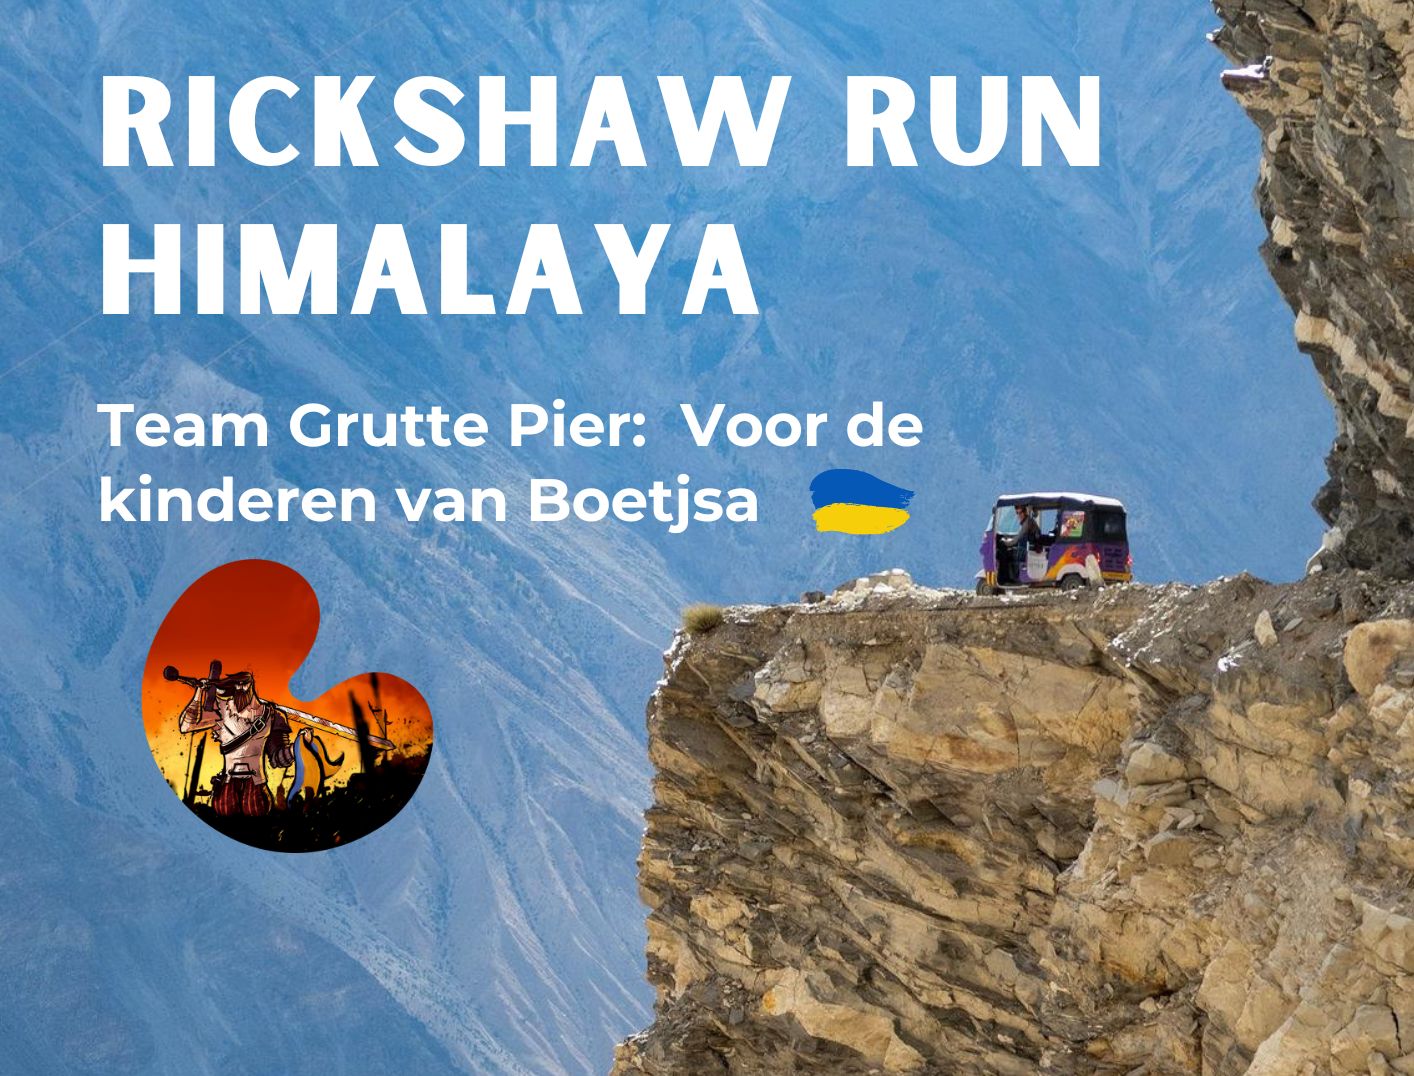 Rickshaw Run Himalaya